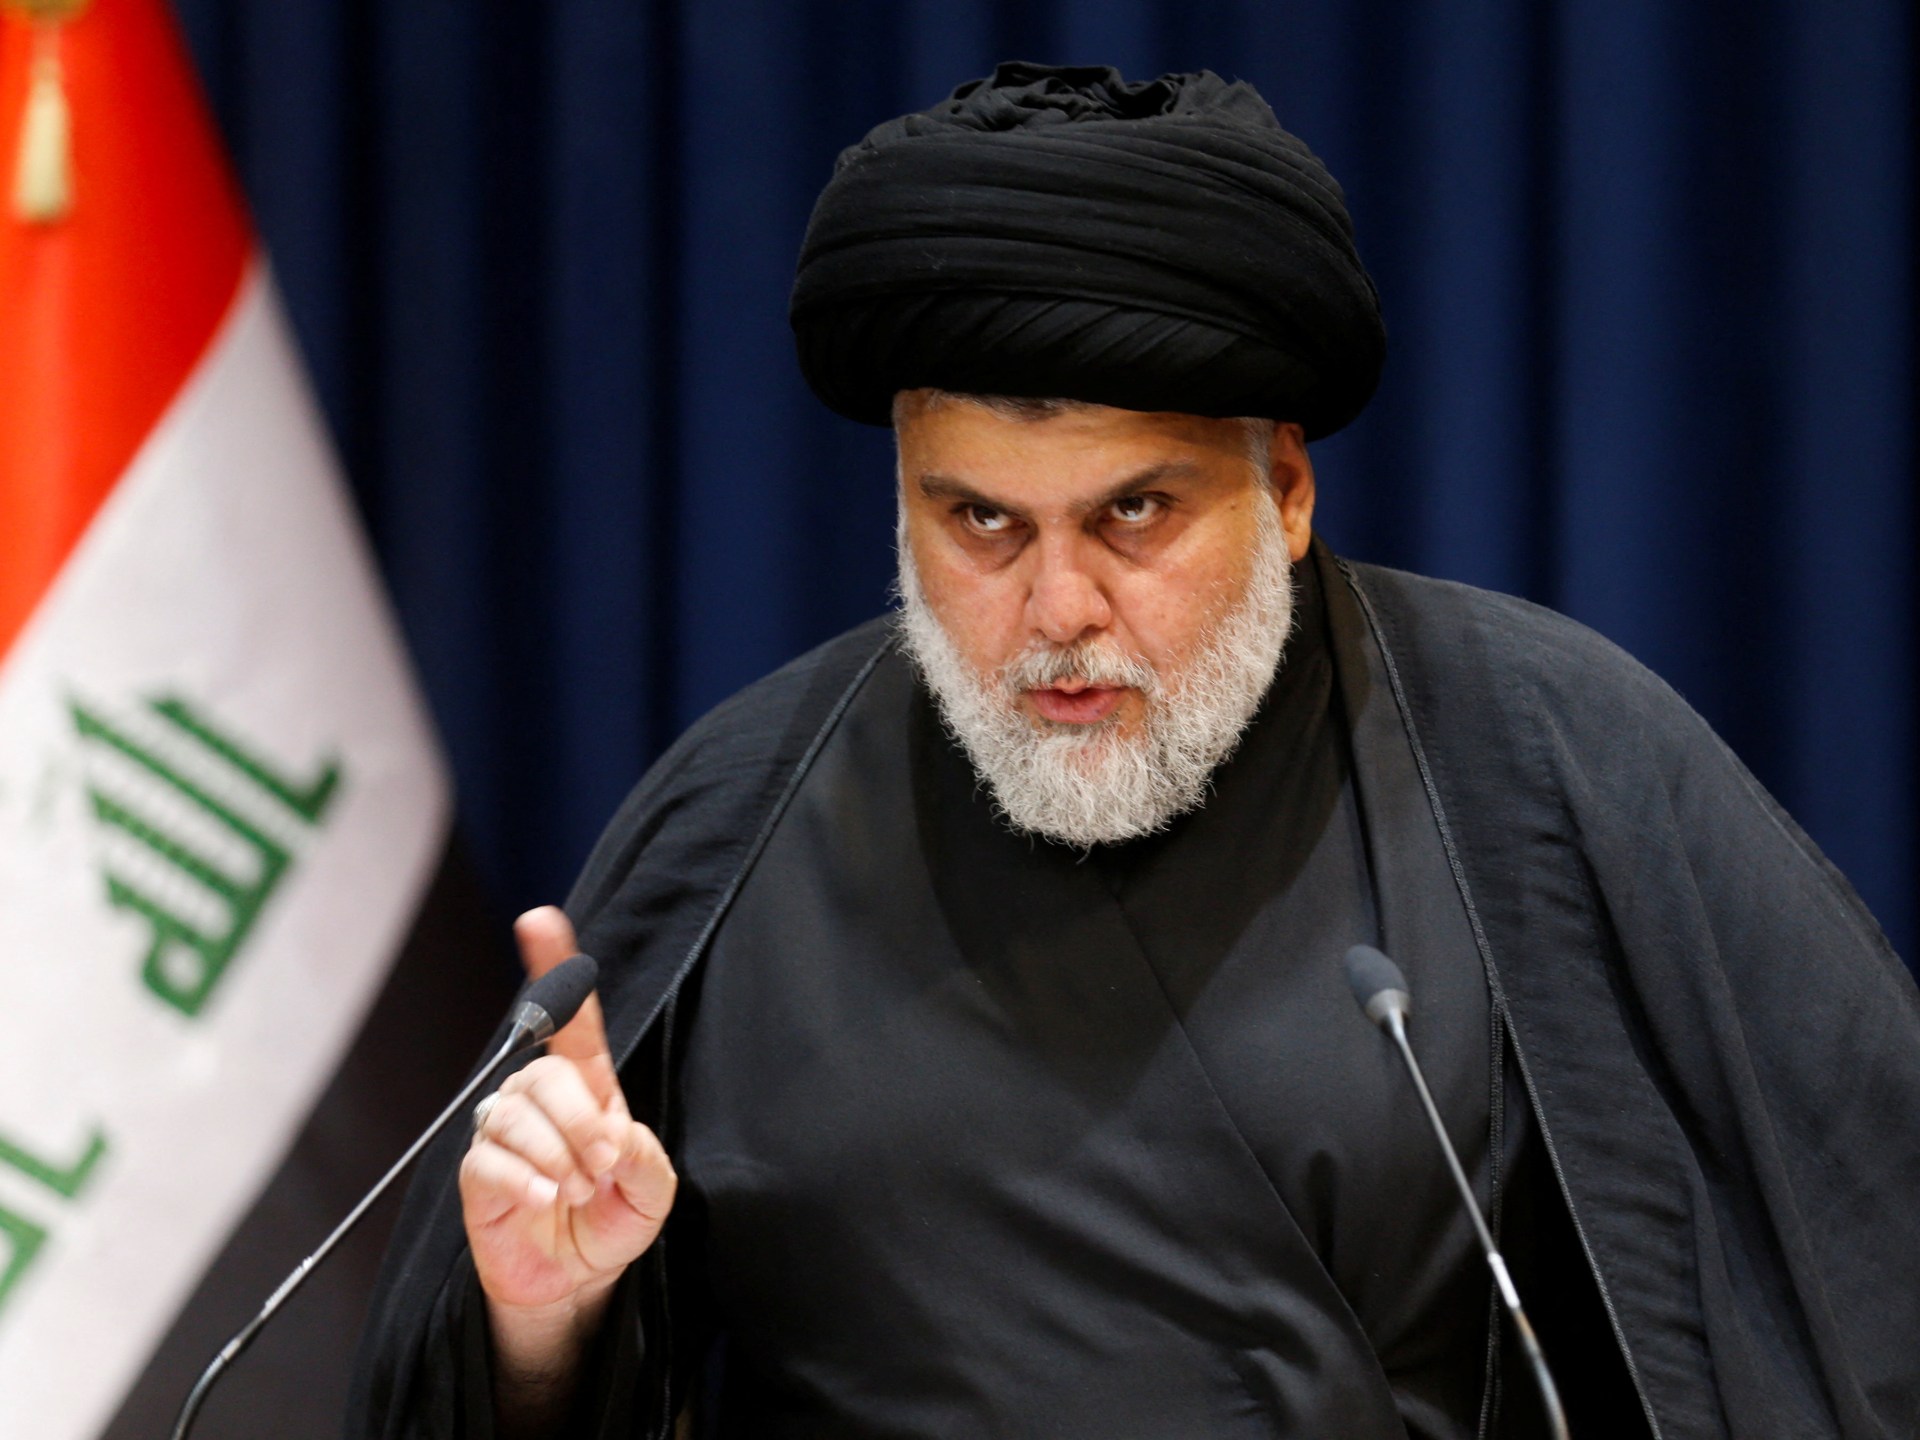 Al-Sadr ‘withdraws’ from Iraqi politics after months of tensions – Al Jazeera English